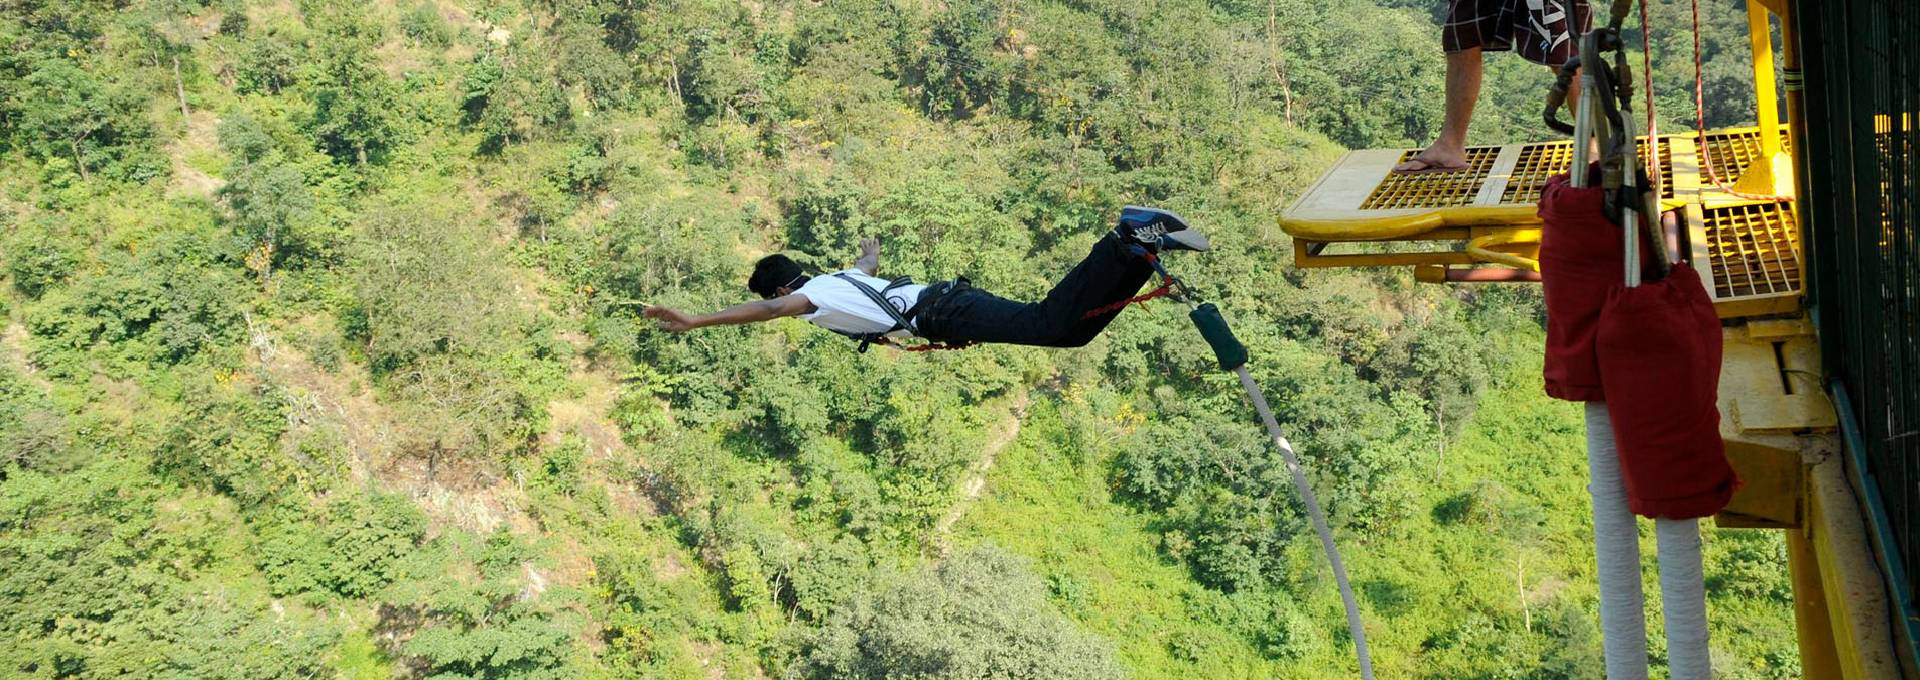 Bungee jumping in rishikesh